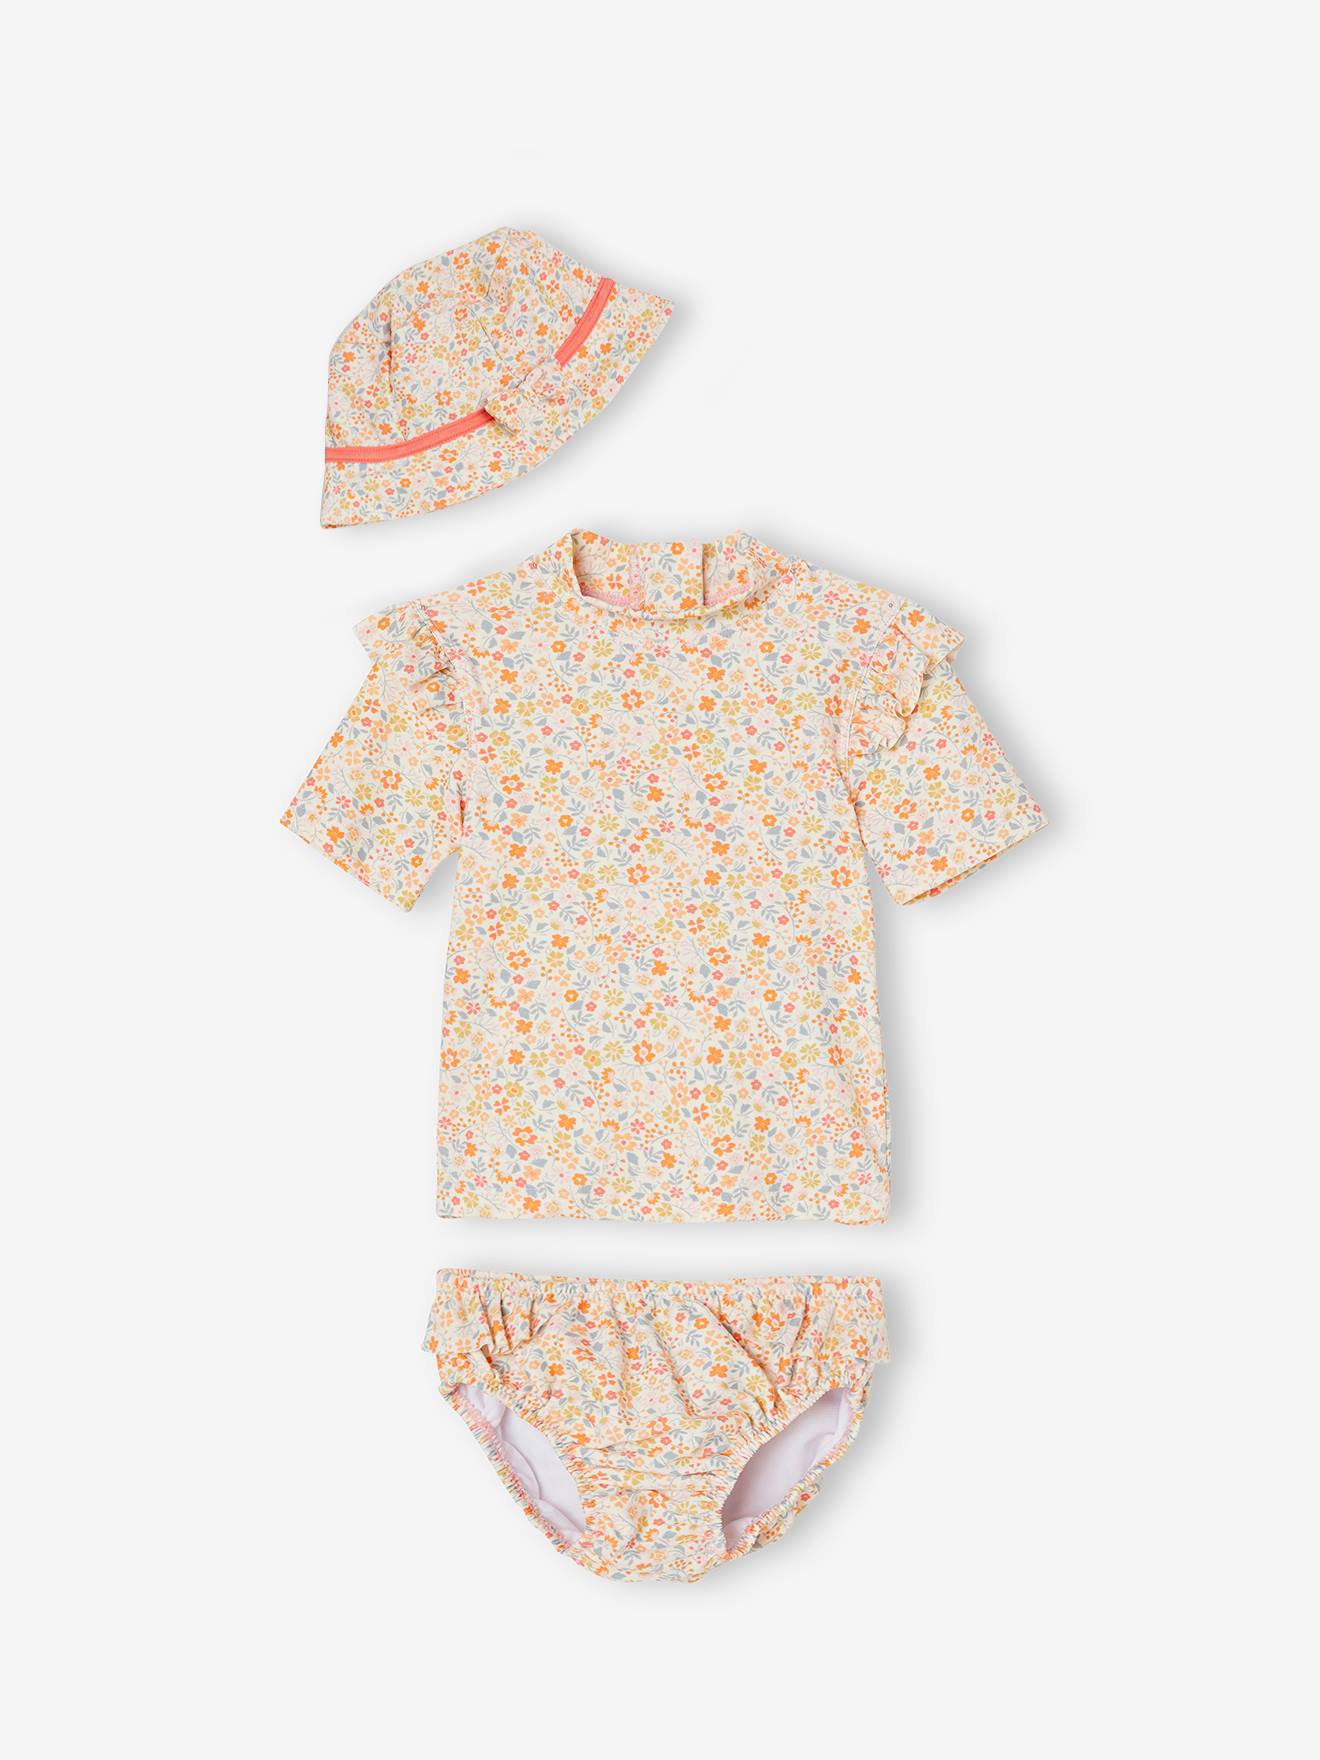 Meisjesbaby UV-bescherming zwemset T-shirt + slipje + hoedje met liberty print koraal